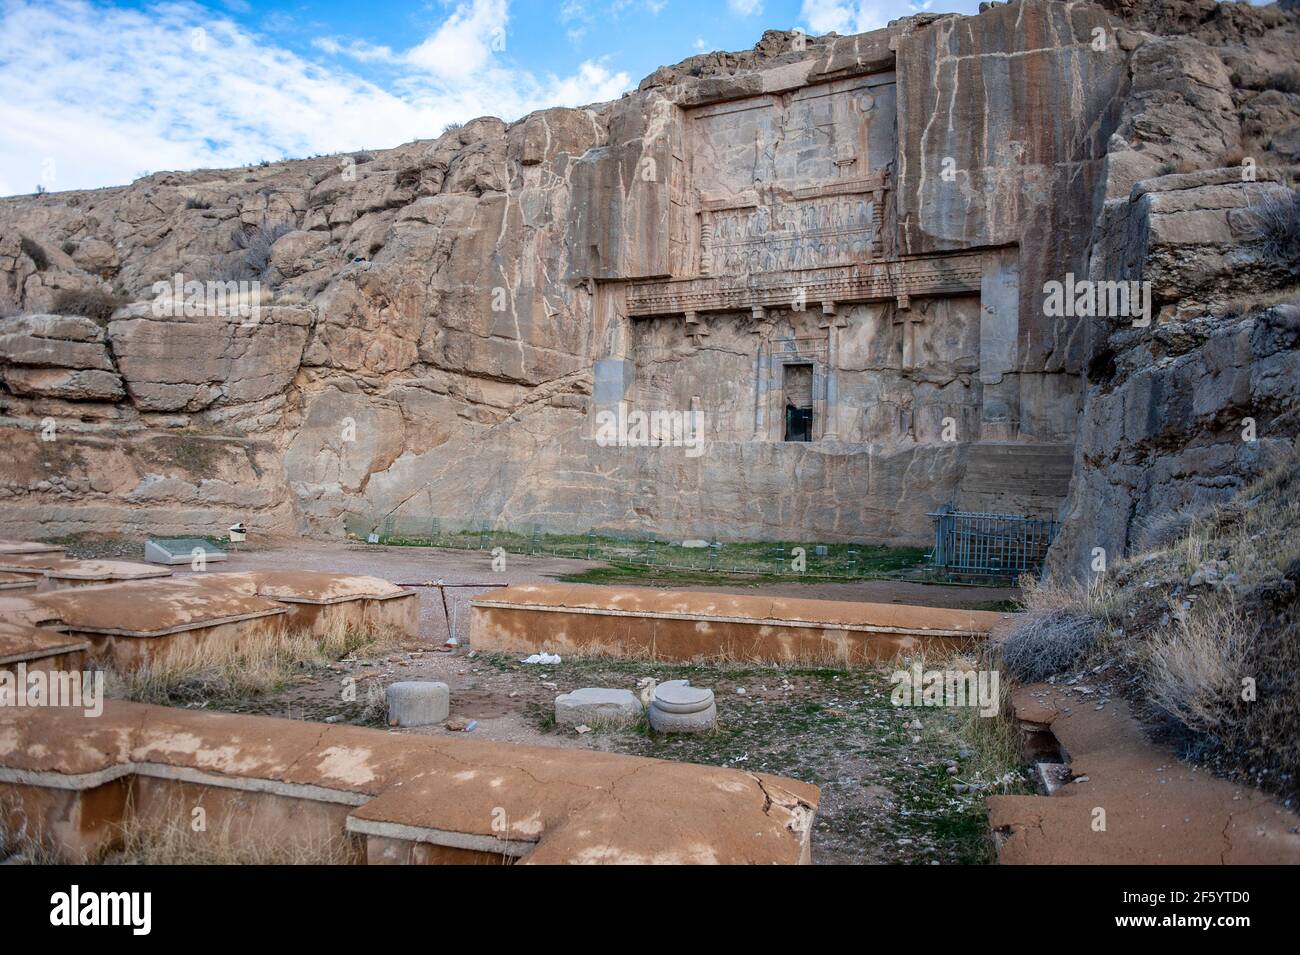 Tomba di Artaserse II, re dell'antica Persia, situata nelle rovine di Persepolis in Iran Foto Stock